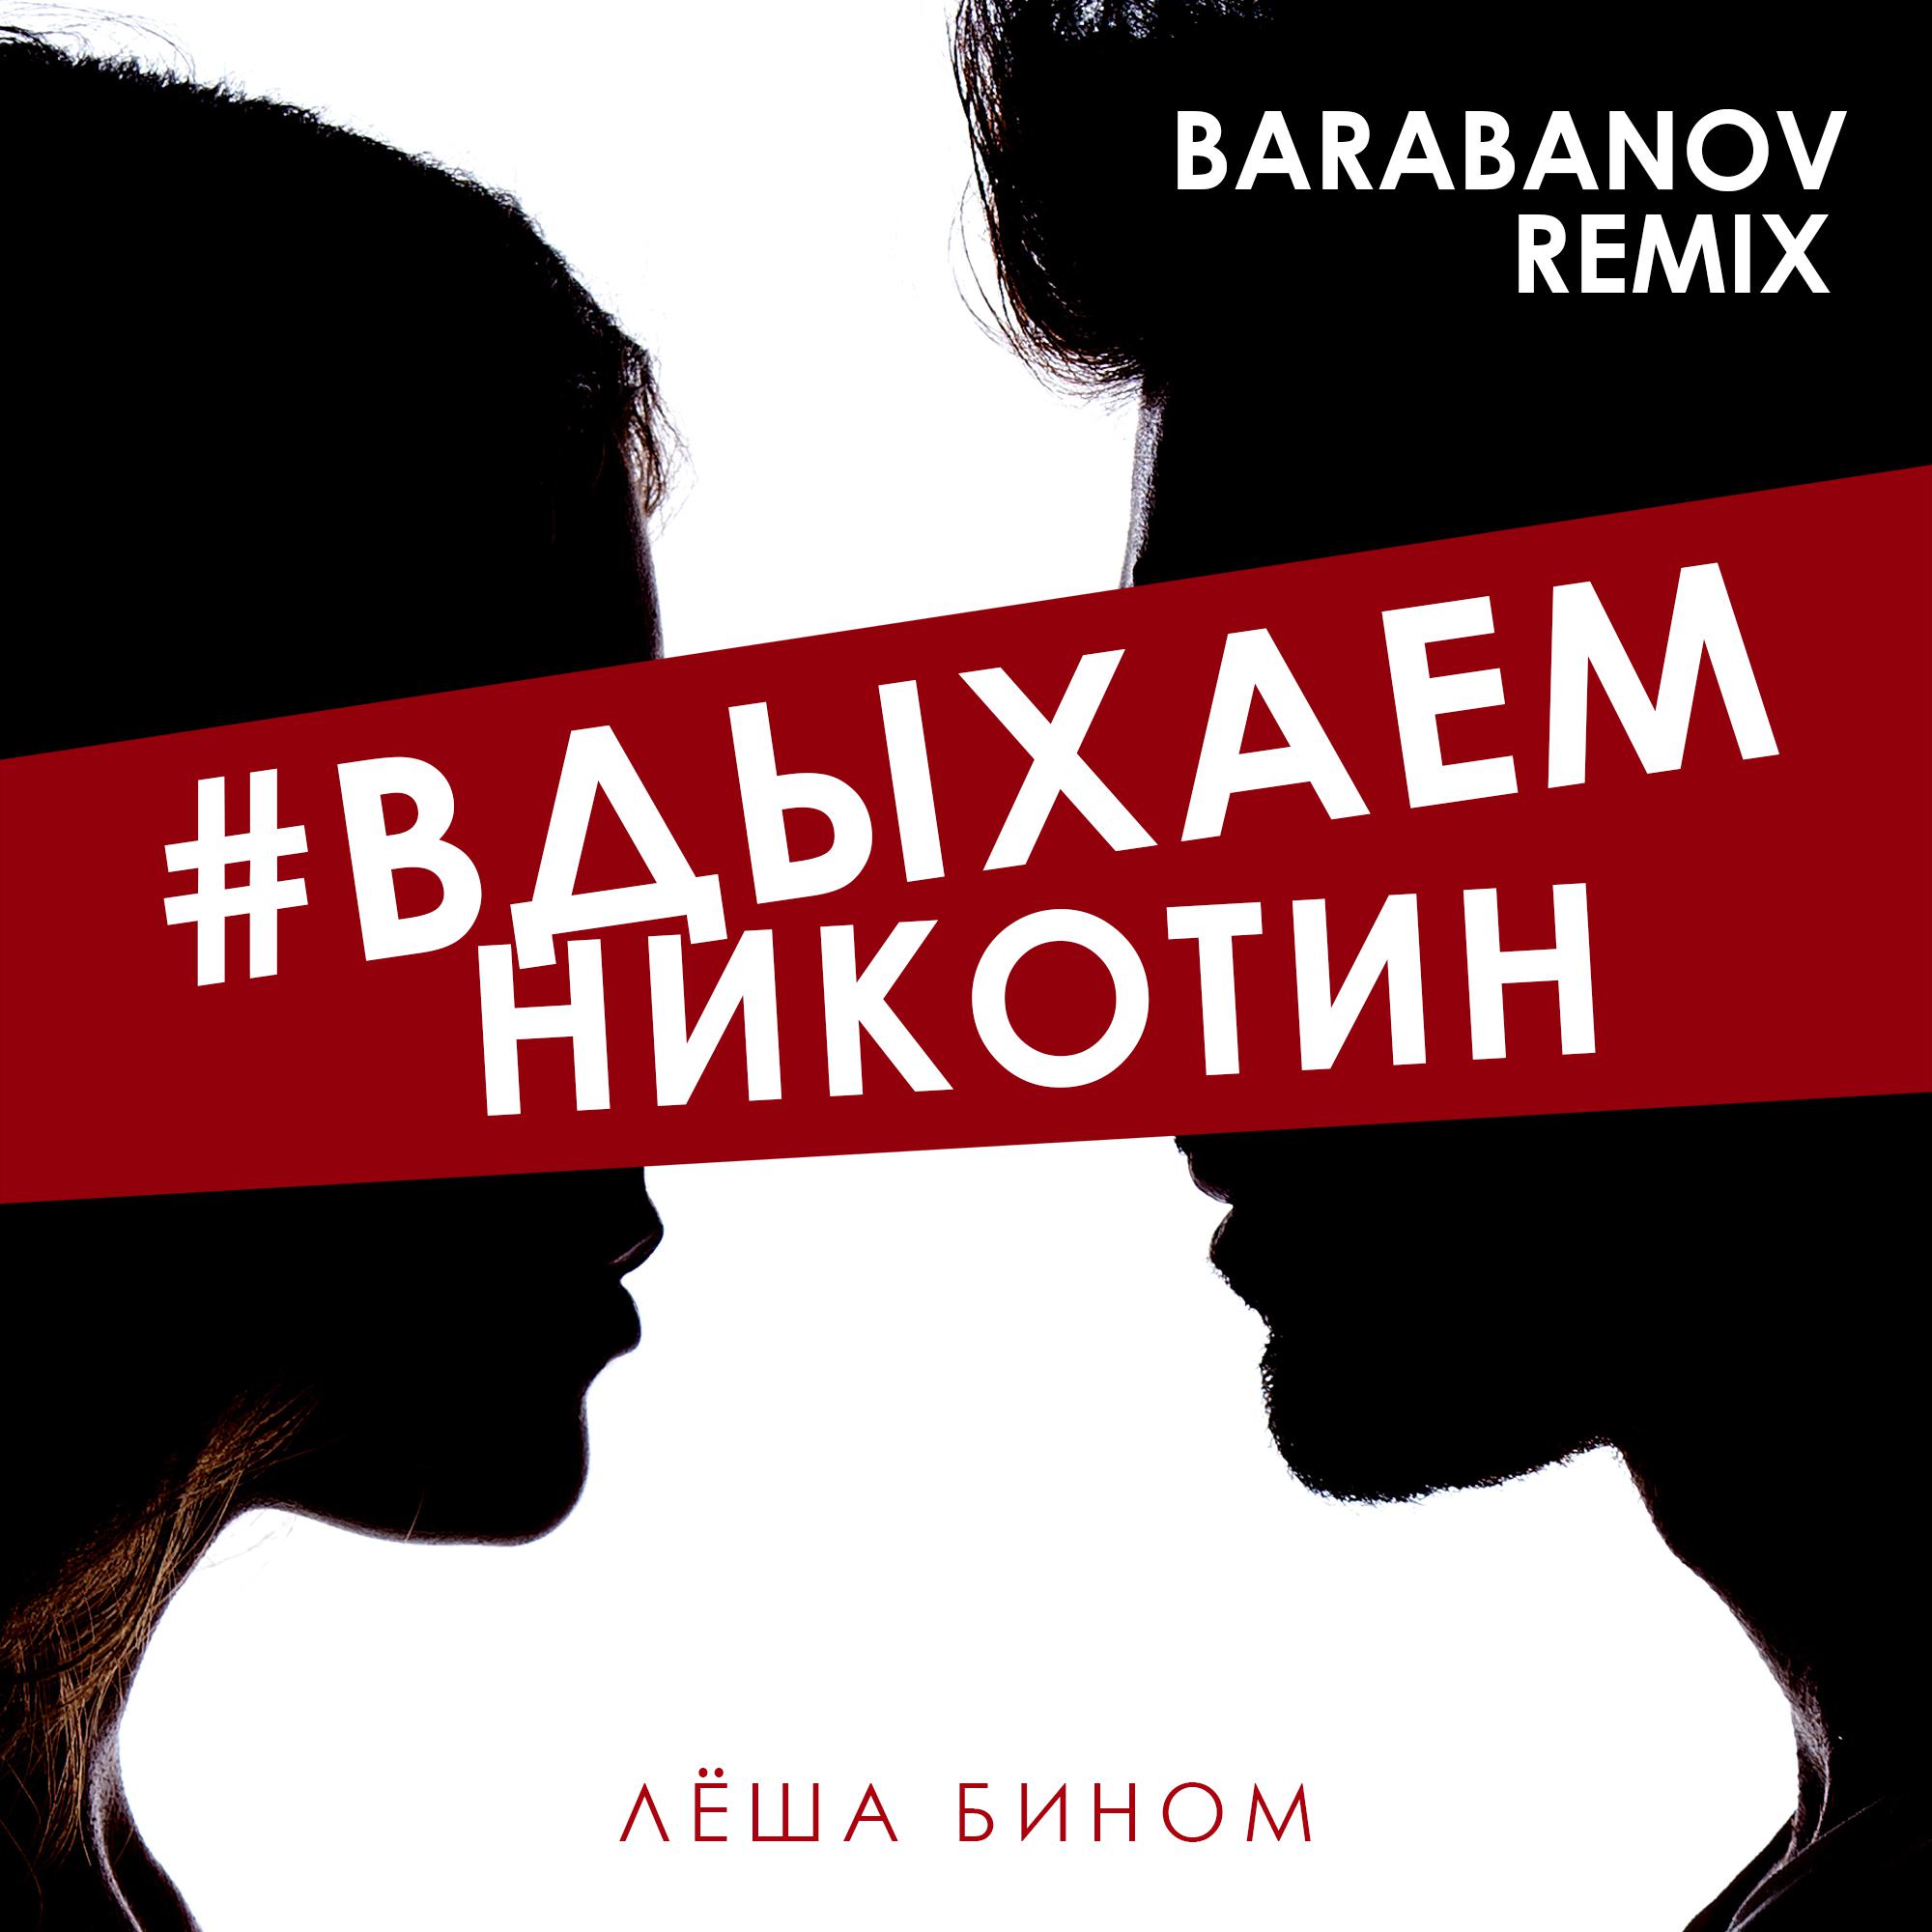 Постер альбома #Вдыхаемникотин (Barabanov Remix)